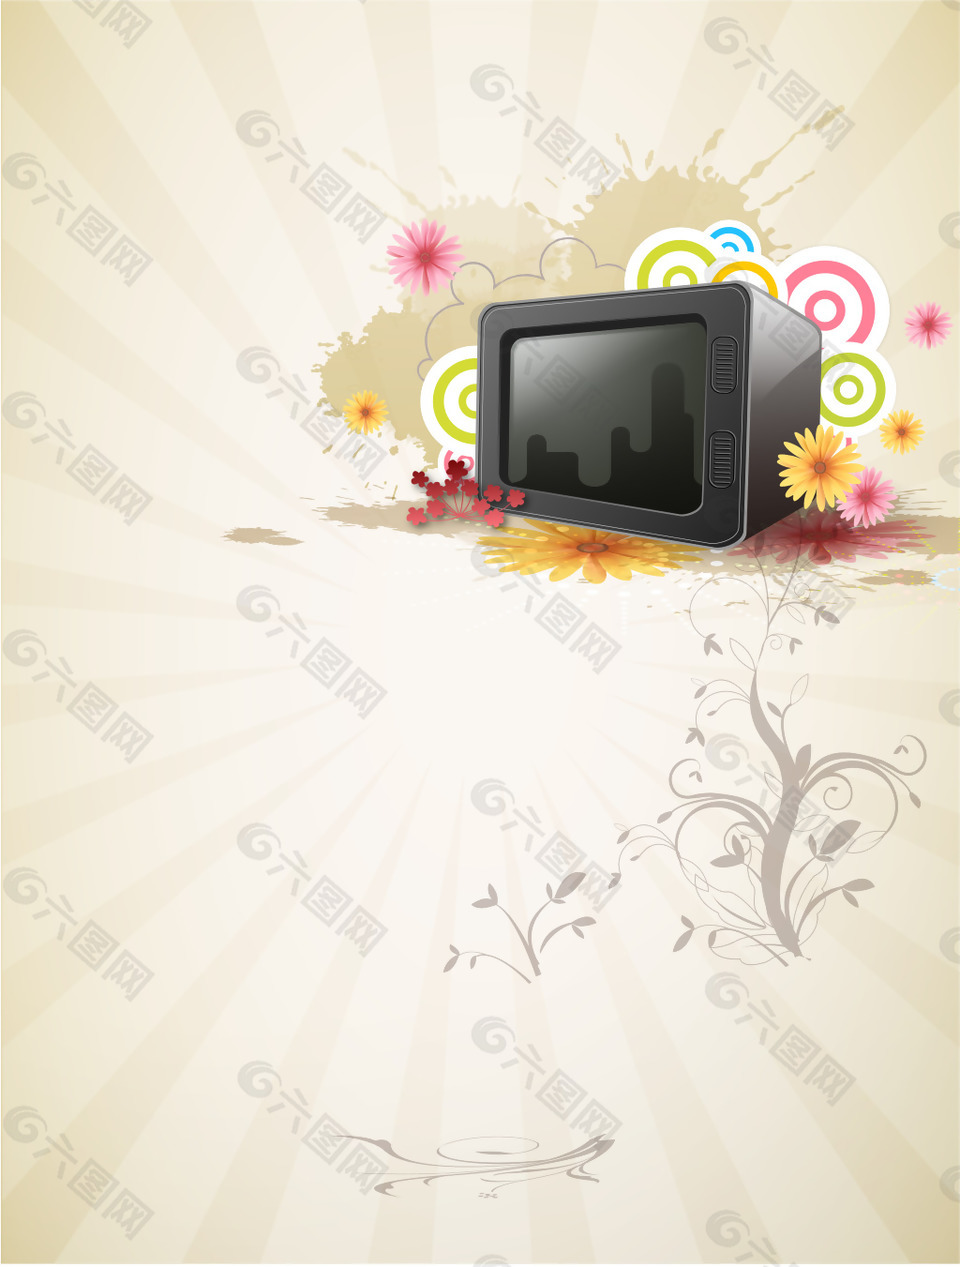 矢量黑色电视机彩色圈圈花朵灰底背景素材